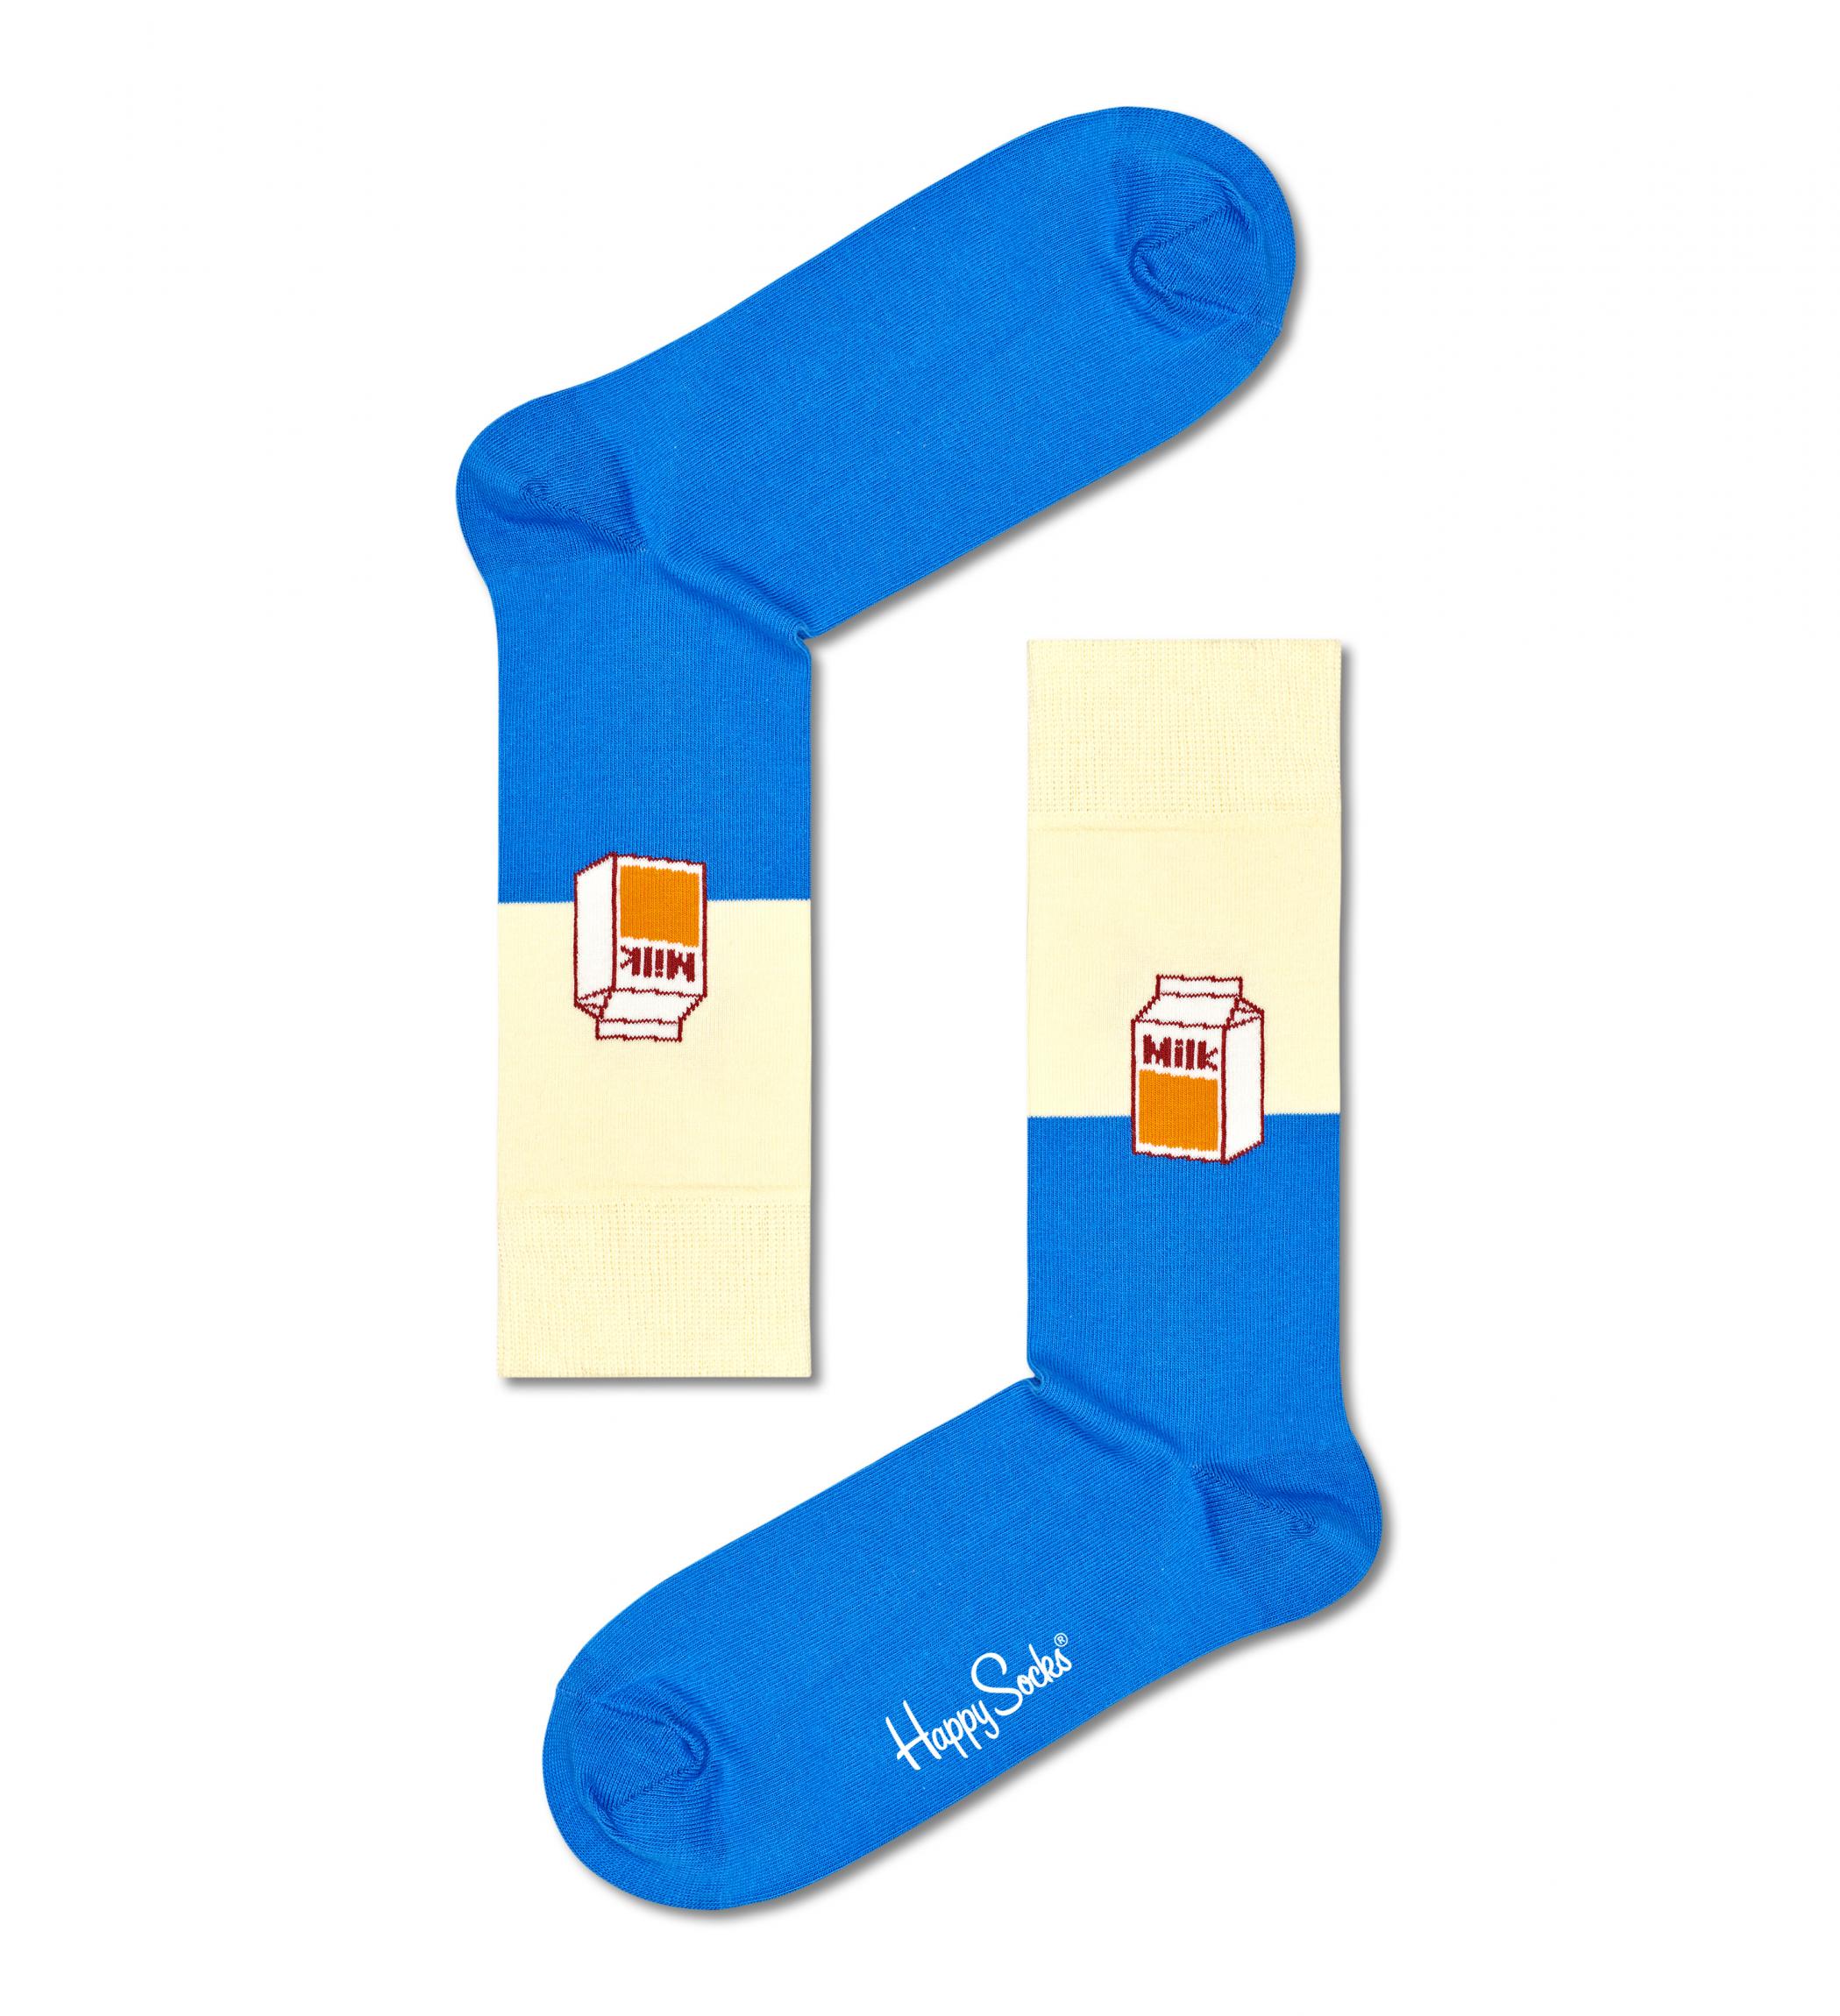 Modro-bílé ponožky Happy Socks s krabicí mléka, vzor Milk